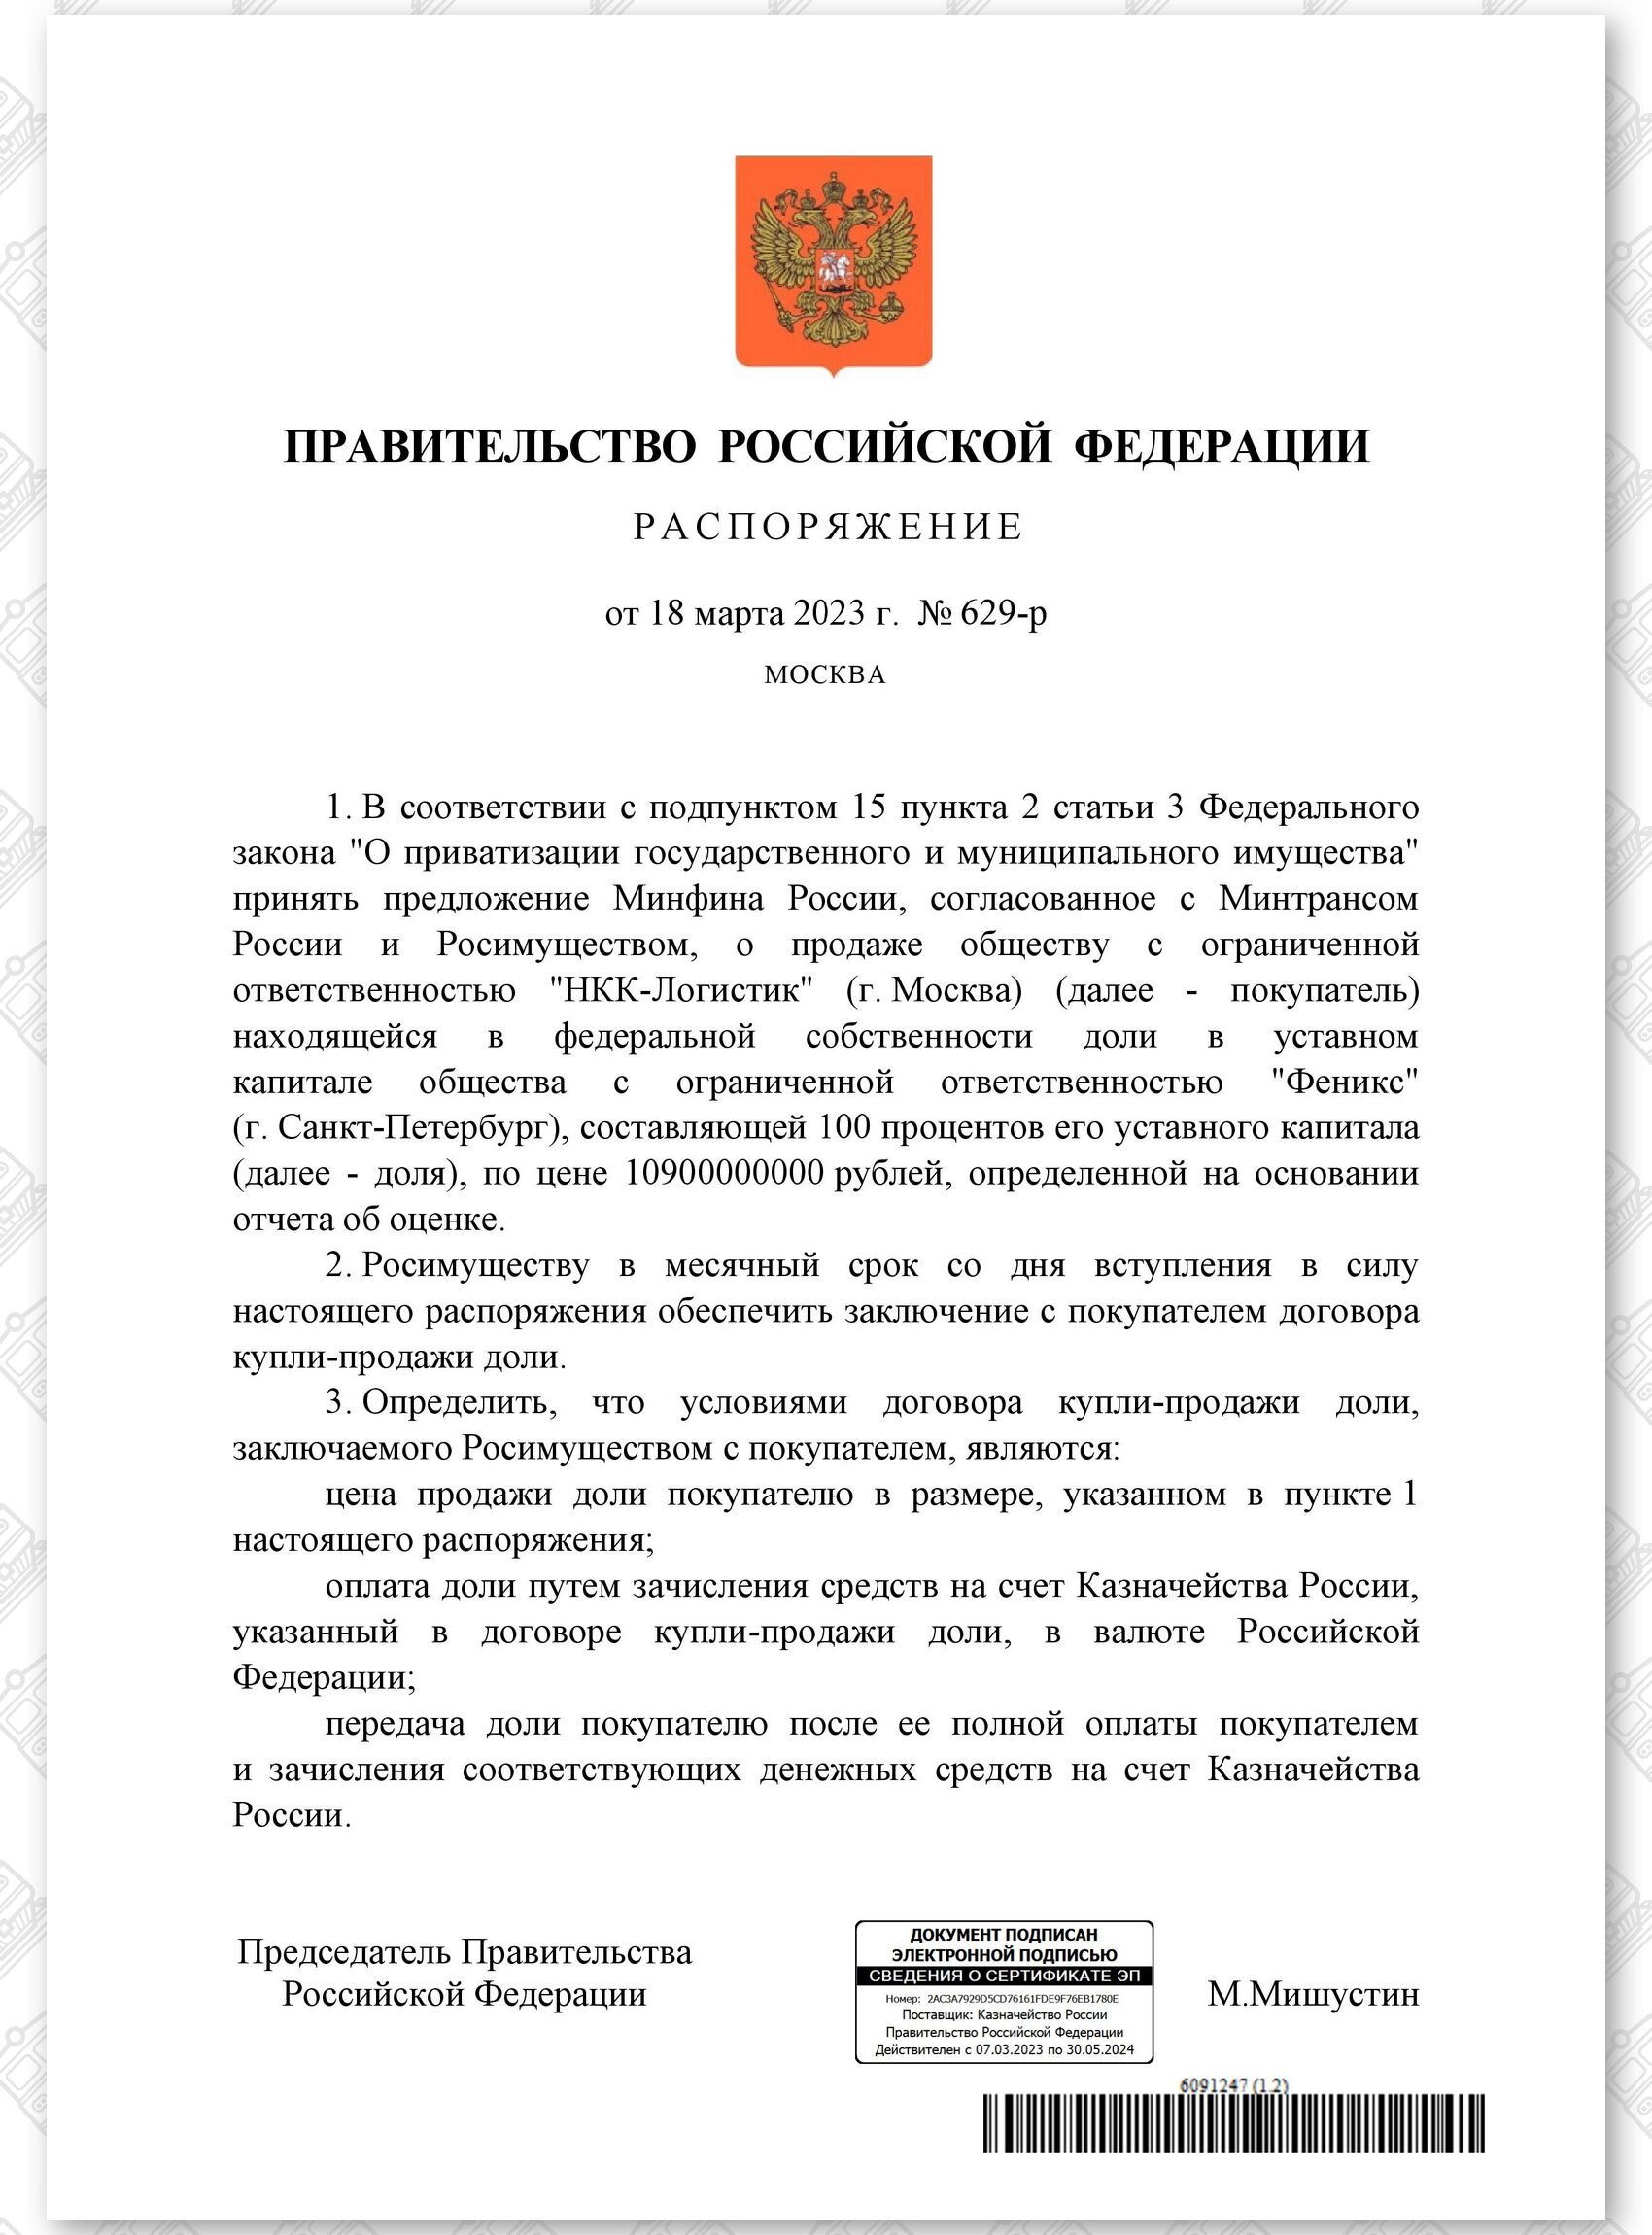 Распоряжение правительства России от 18.03.2023 № 629-р